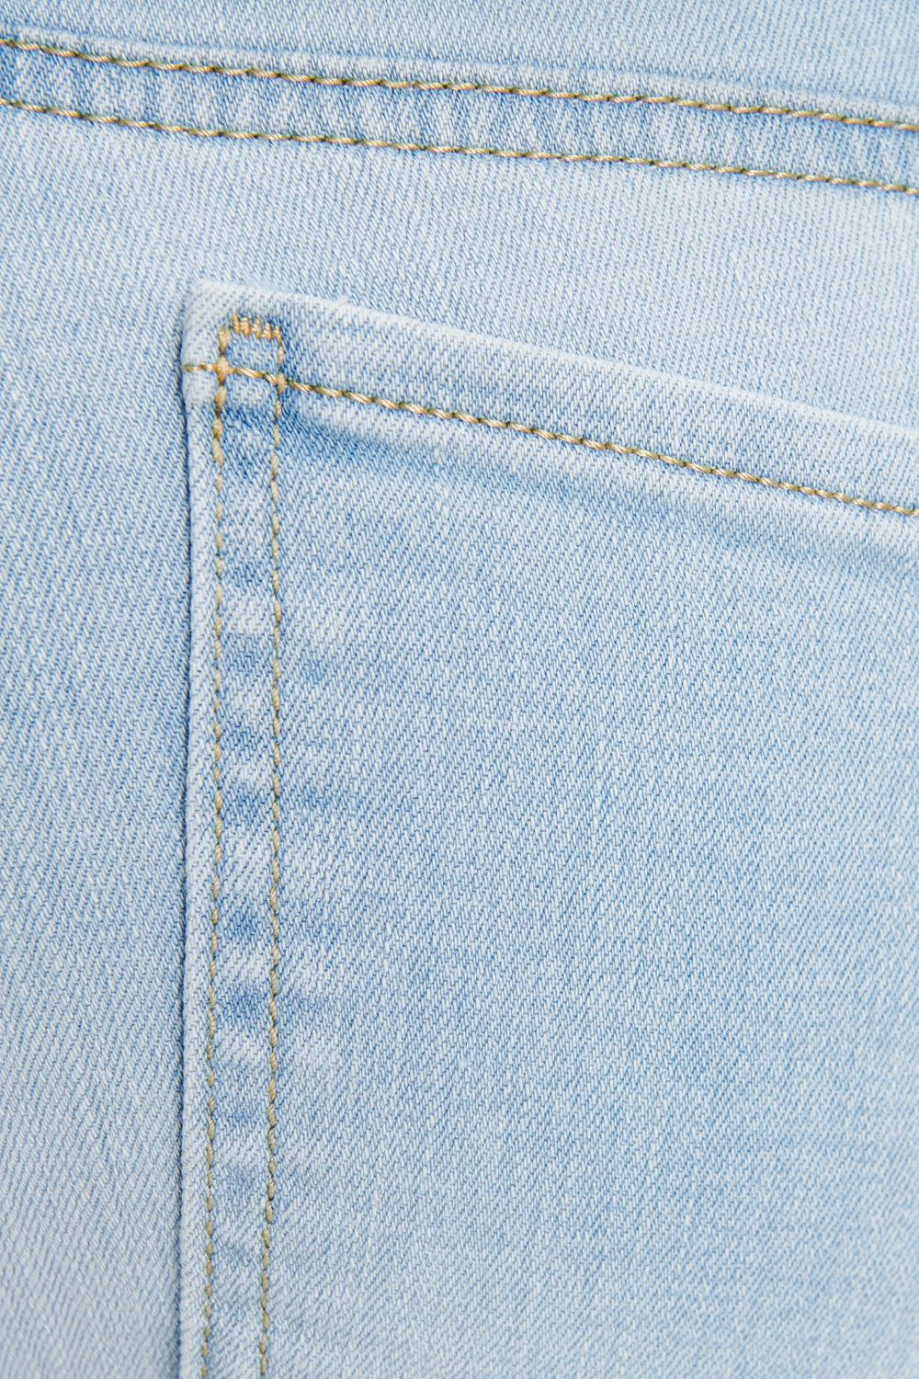 Jean súper skinny azul claro con detalles desteñidos y 5 bolsillos